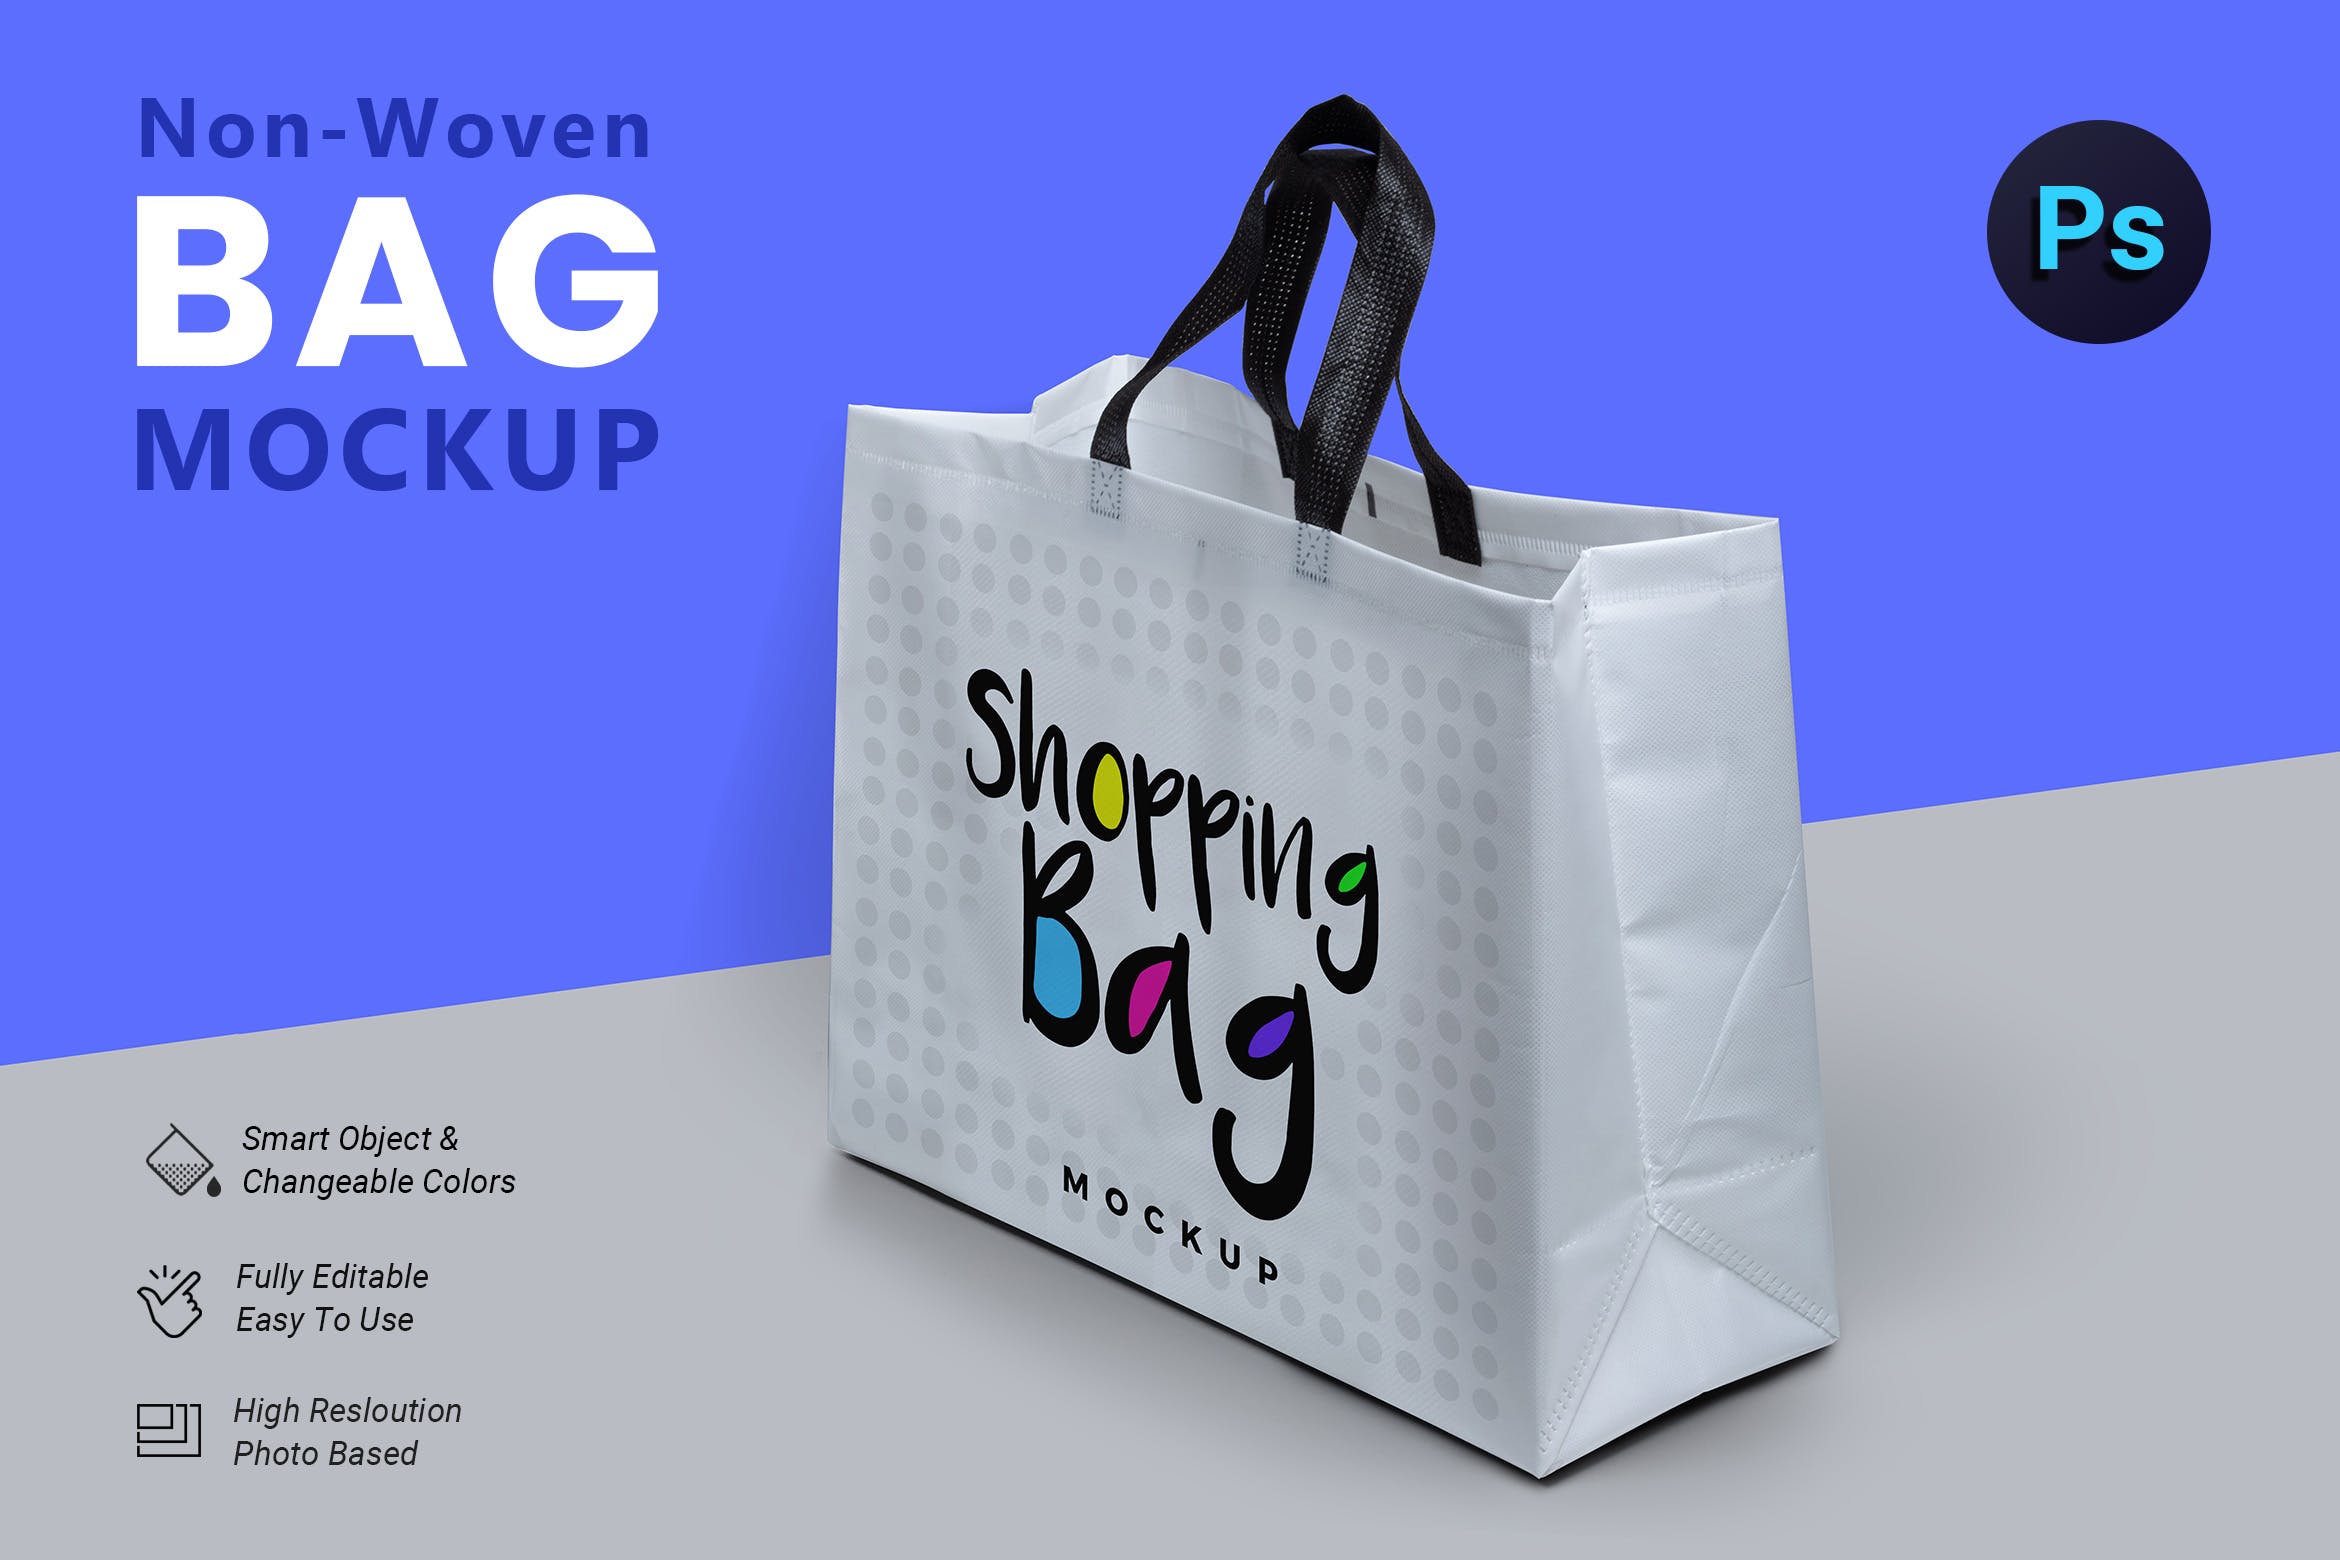 无纺布购物袋外观设计图第一素材精选 Non Woven Bag Mockup插图